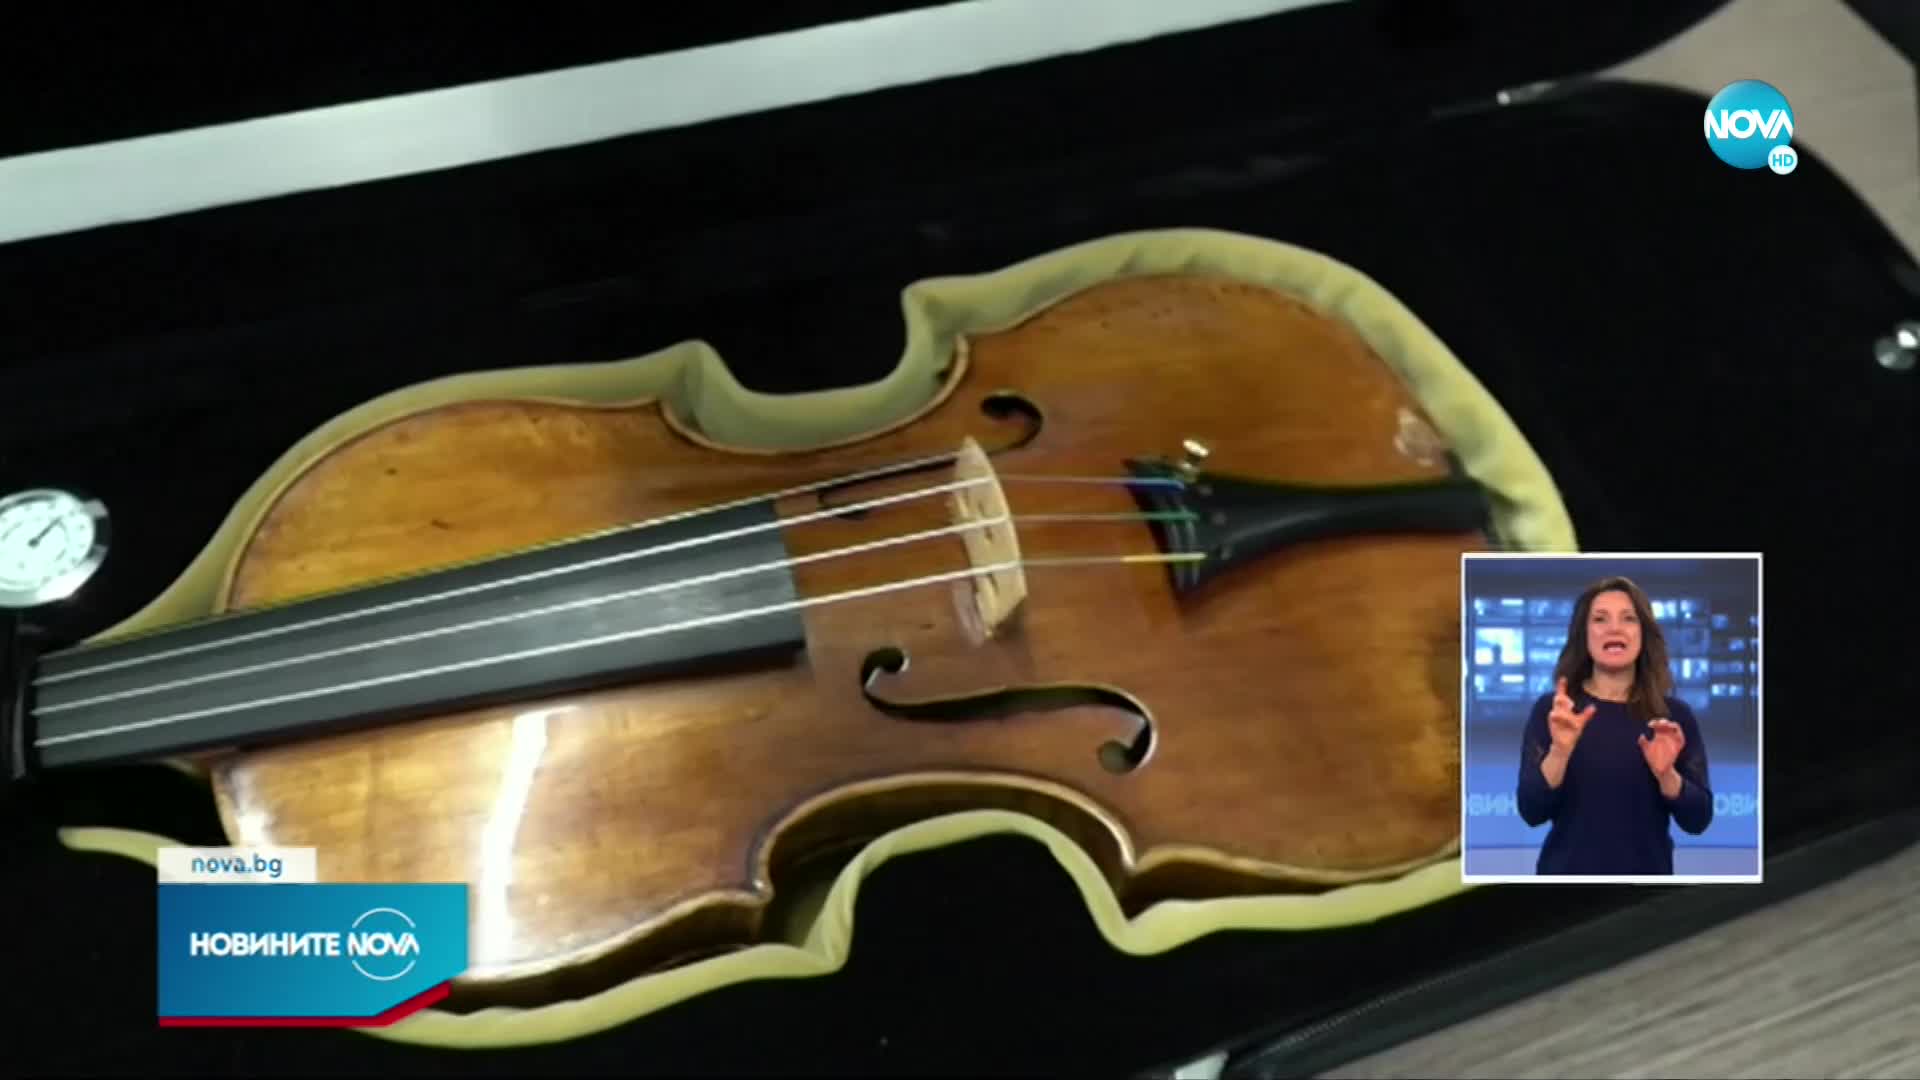 Цигулка на 286 години отива на търг във Франция